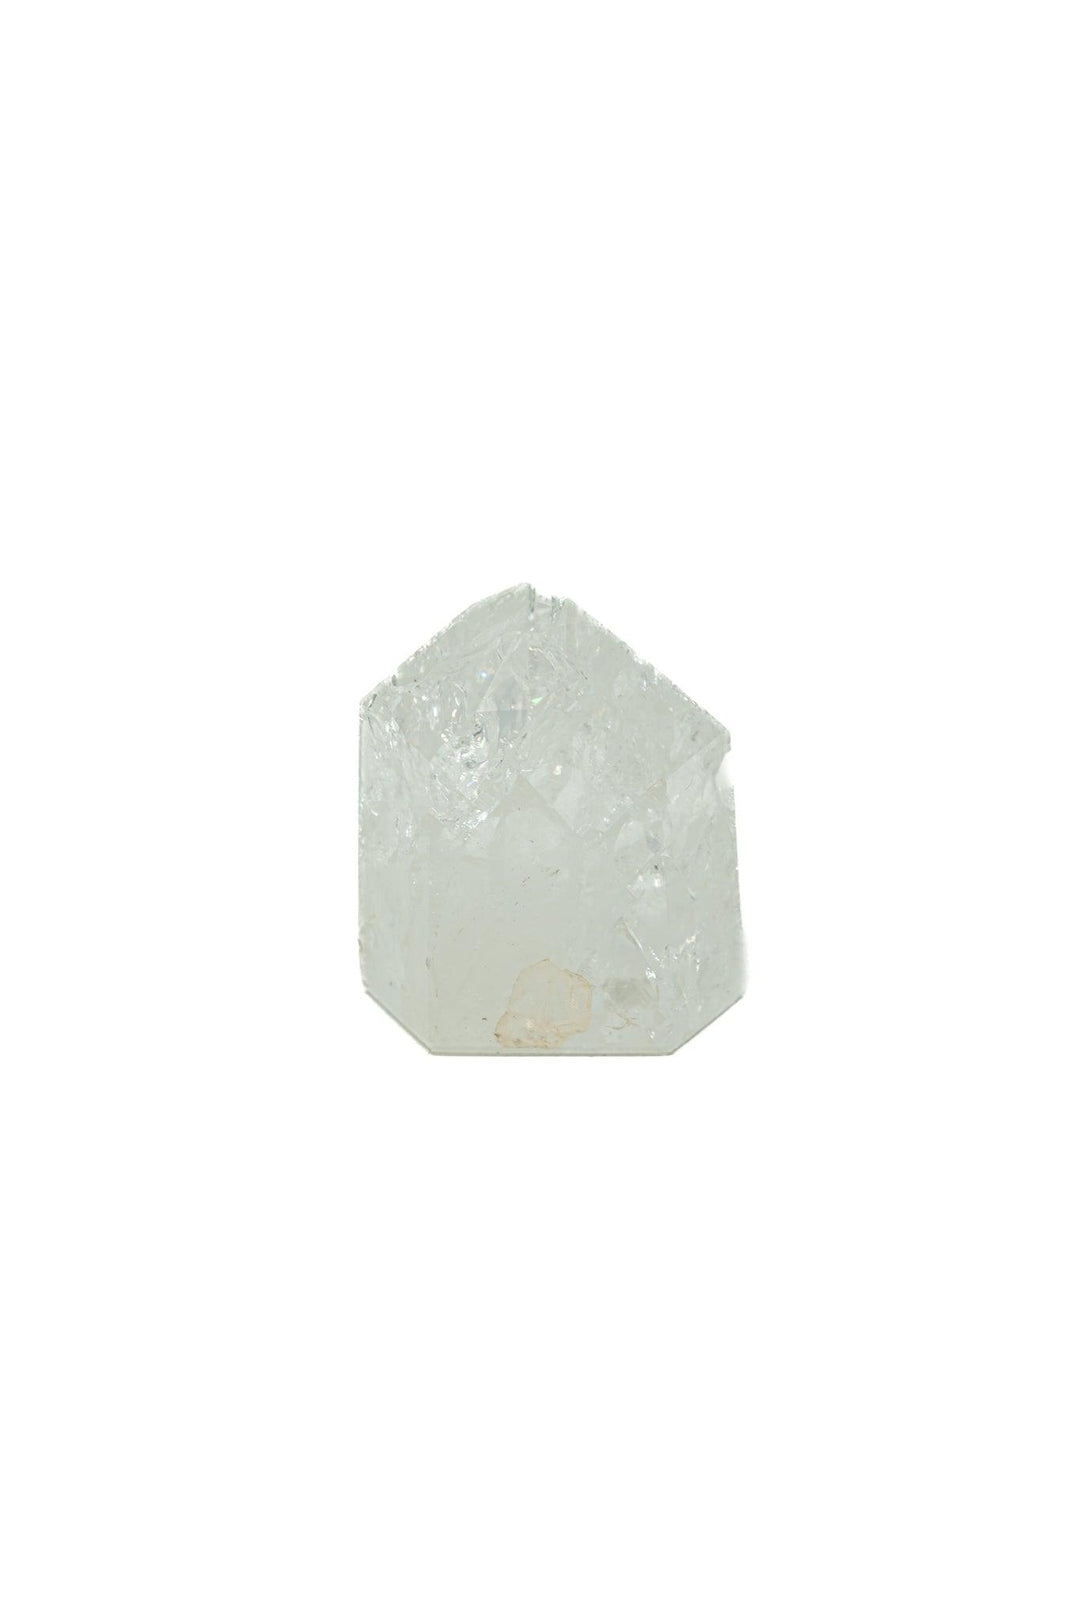 Cracked Clear Qquartz 190 G Crystals Quartz